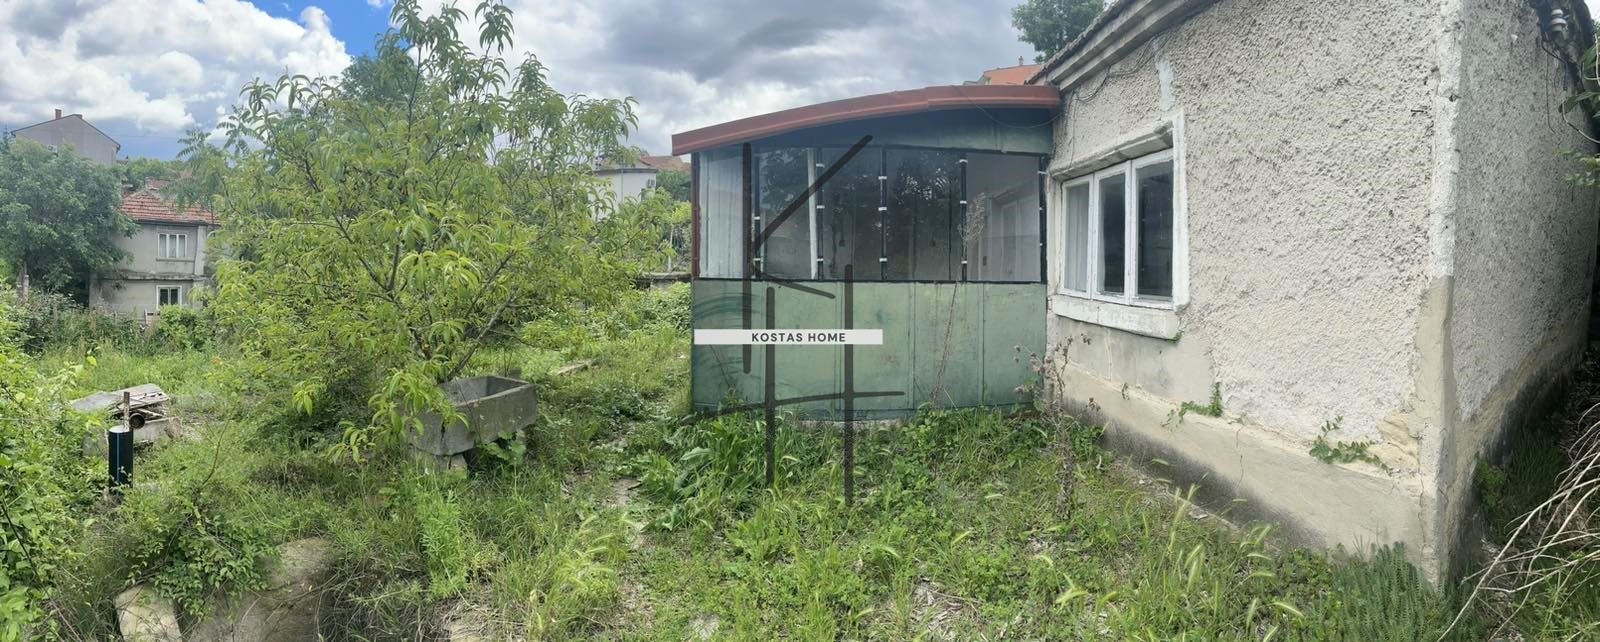 Къща в Варна-Аспарухово площ 80 цена 70000